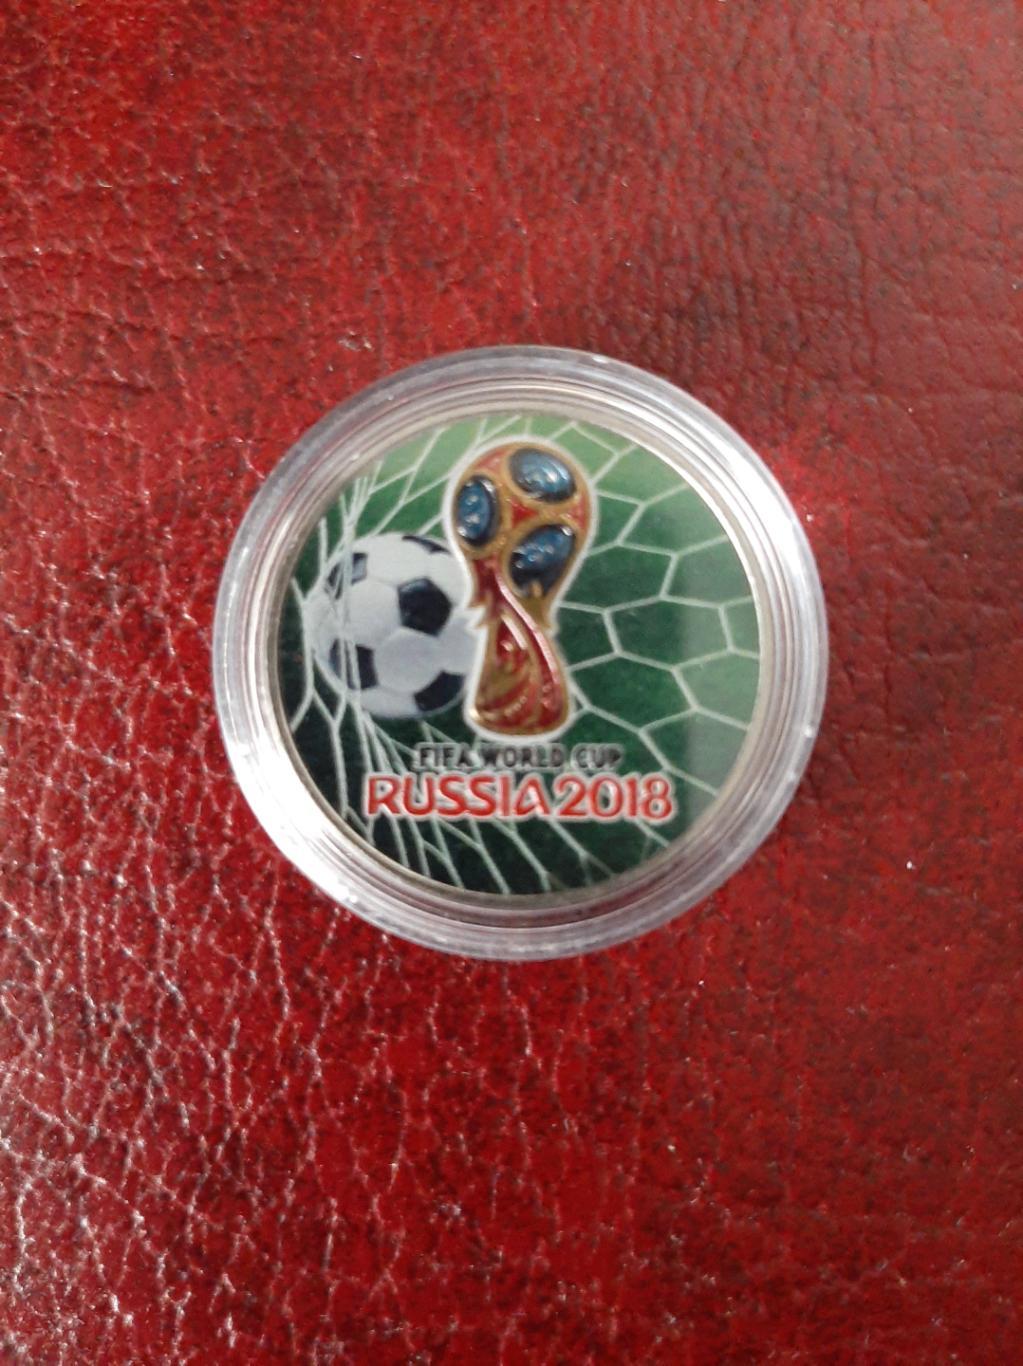 25 рублей ЧМ по футболу 2018 Россия серебристый цветной 5